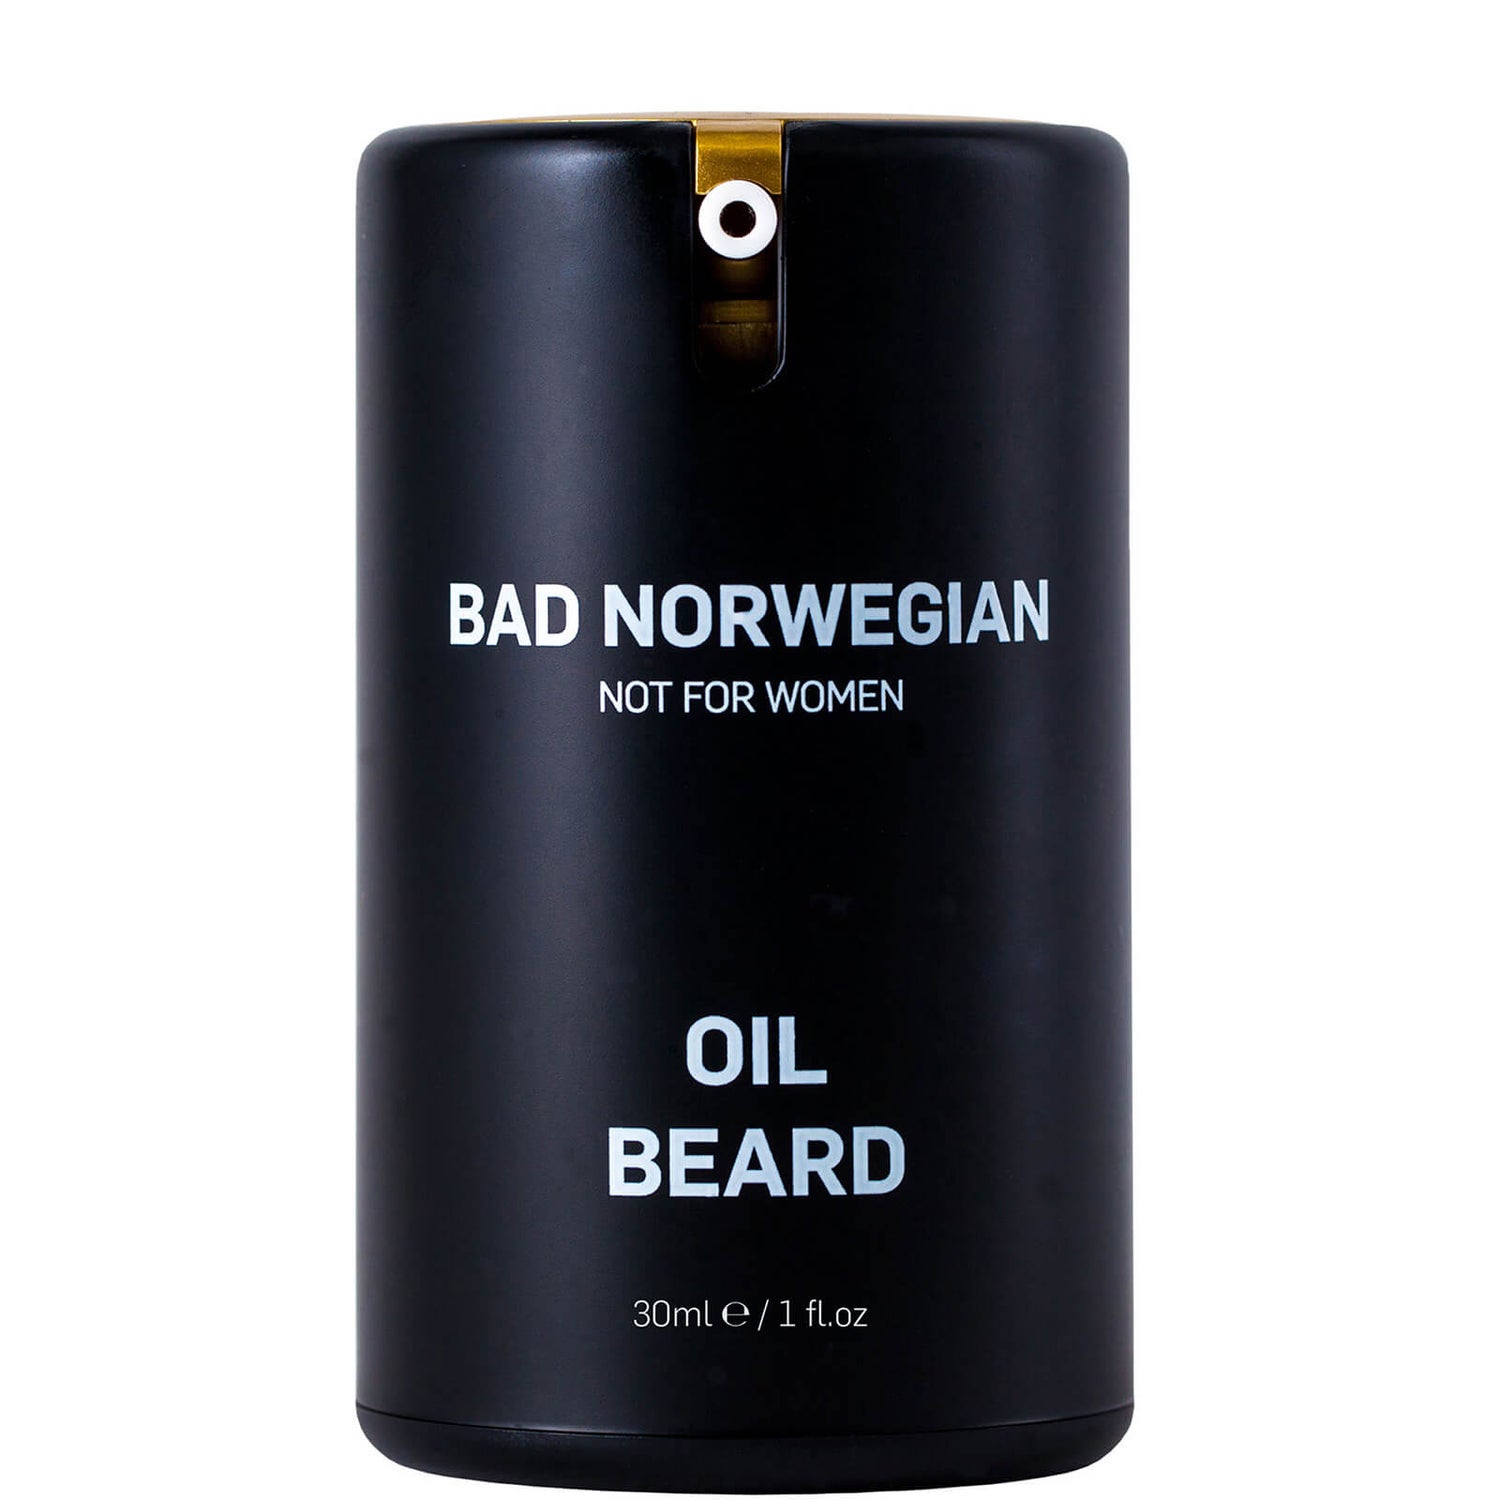 Bad Norwegian Oil Beard 30ml